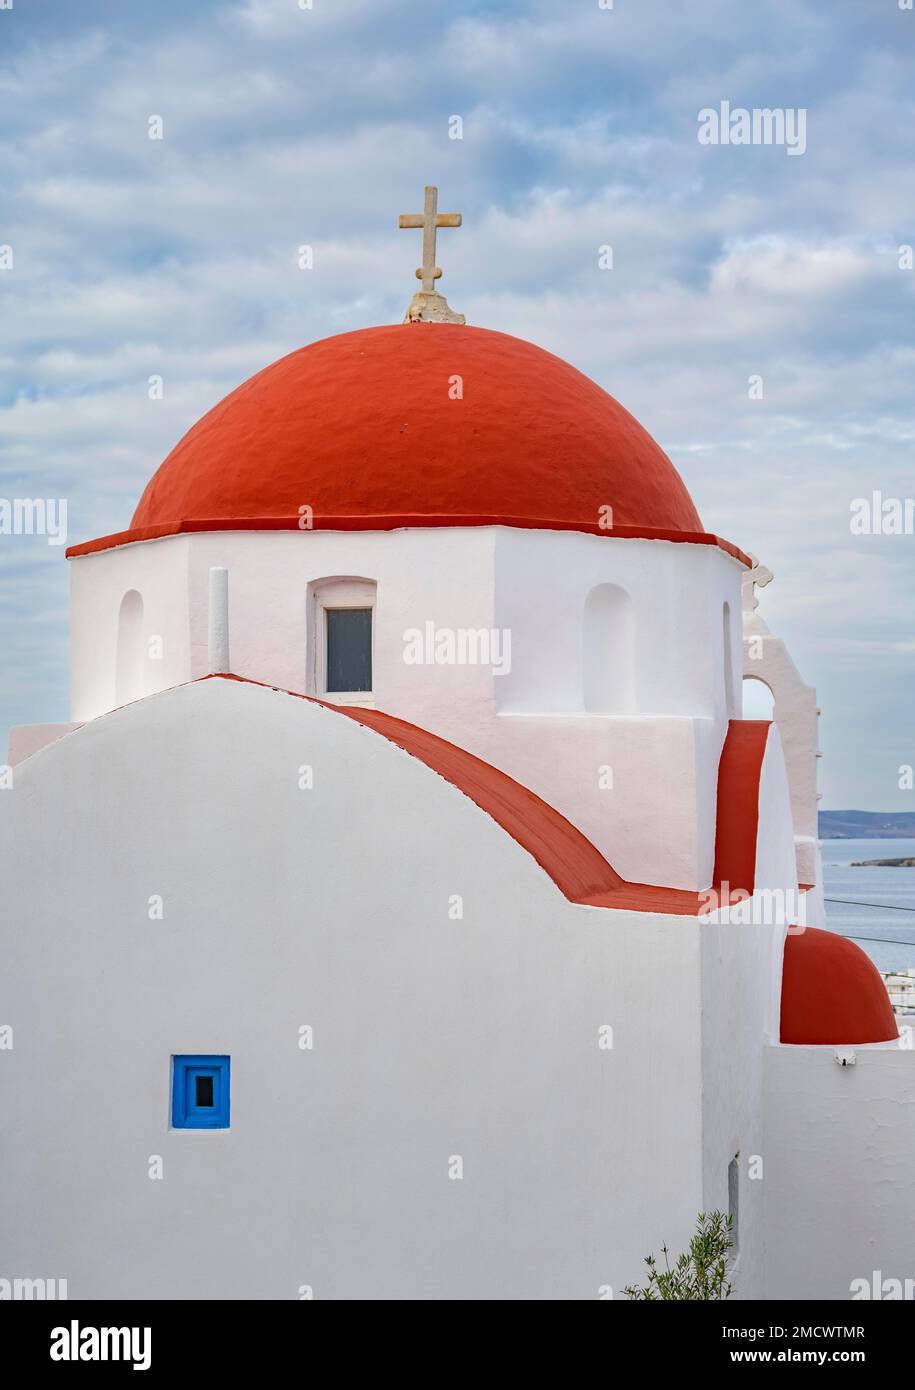 Église blanche à dôme rouge, petite église cycladique Agios Spyridon, ruelles de la vieille ville de Chora, ville de Mykonos, Mykonos, Cyclades, Grèce Banque D'Images